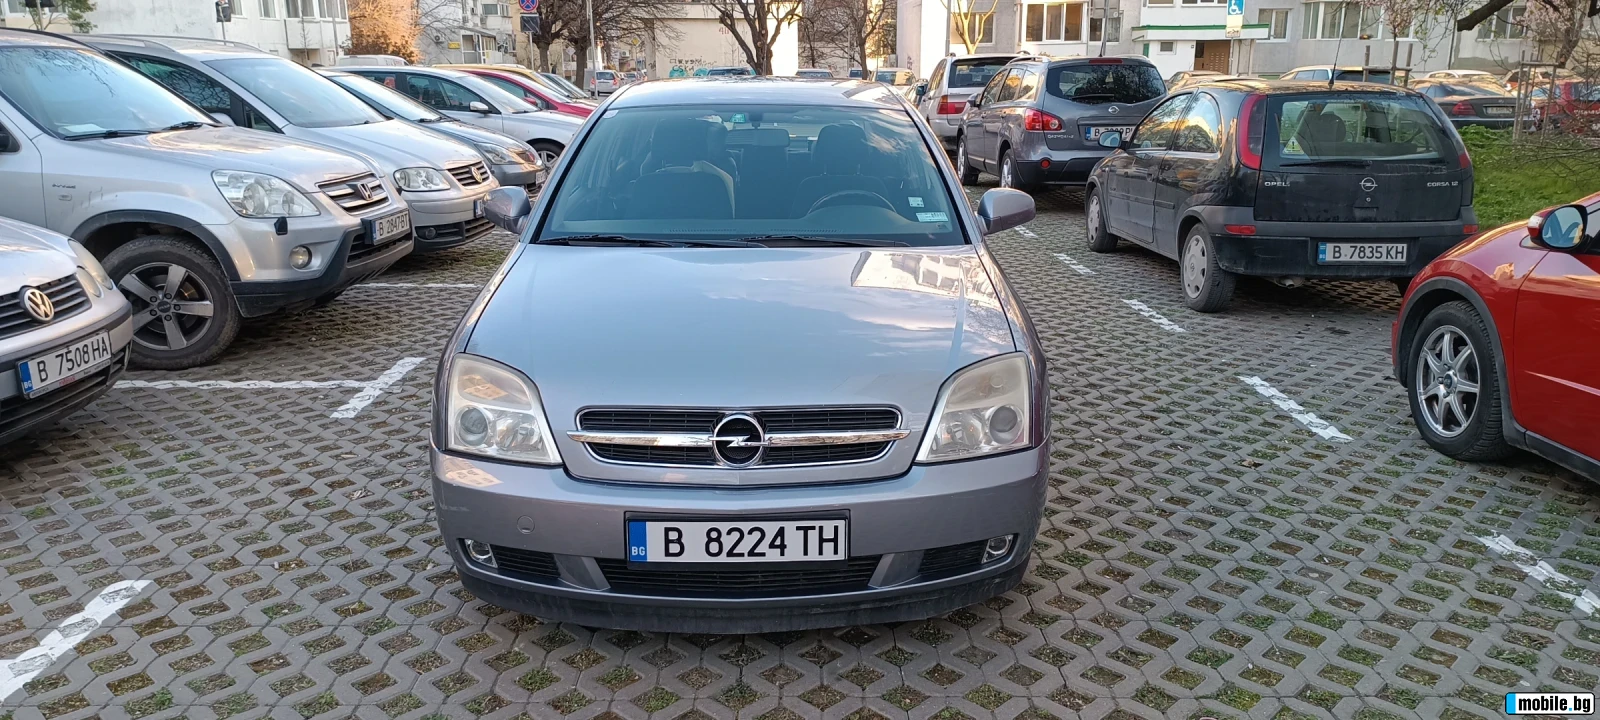 Opel Vectra 2.0 DTI | Mobile.bg   2